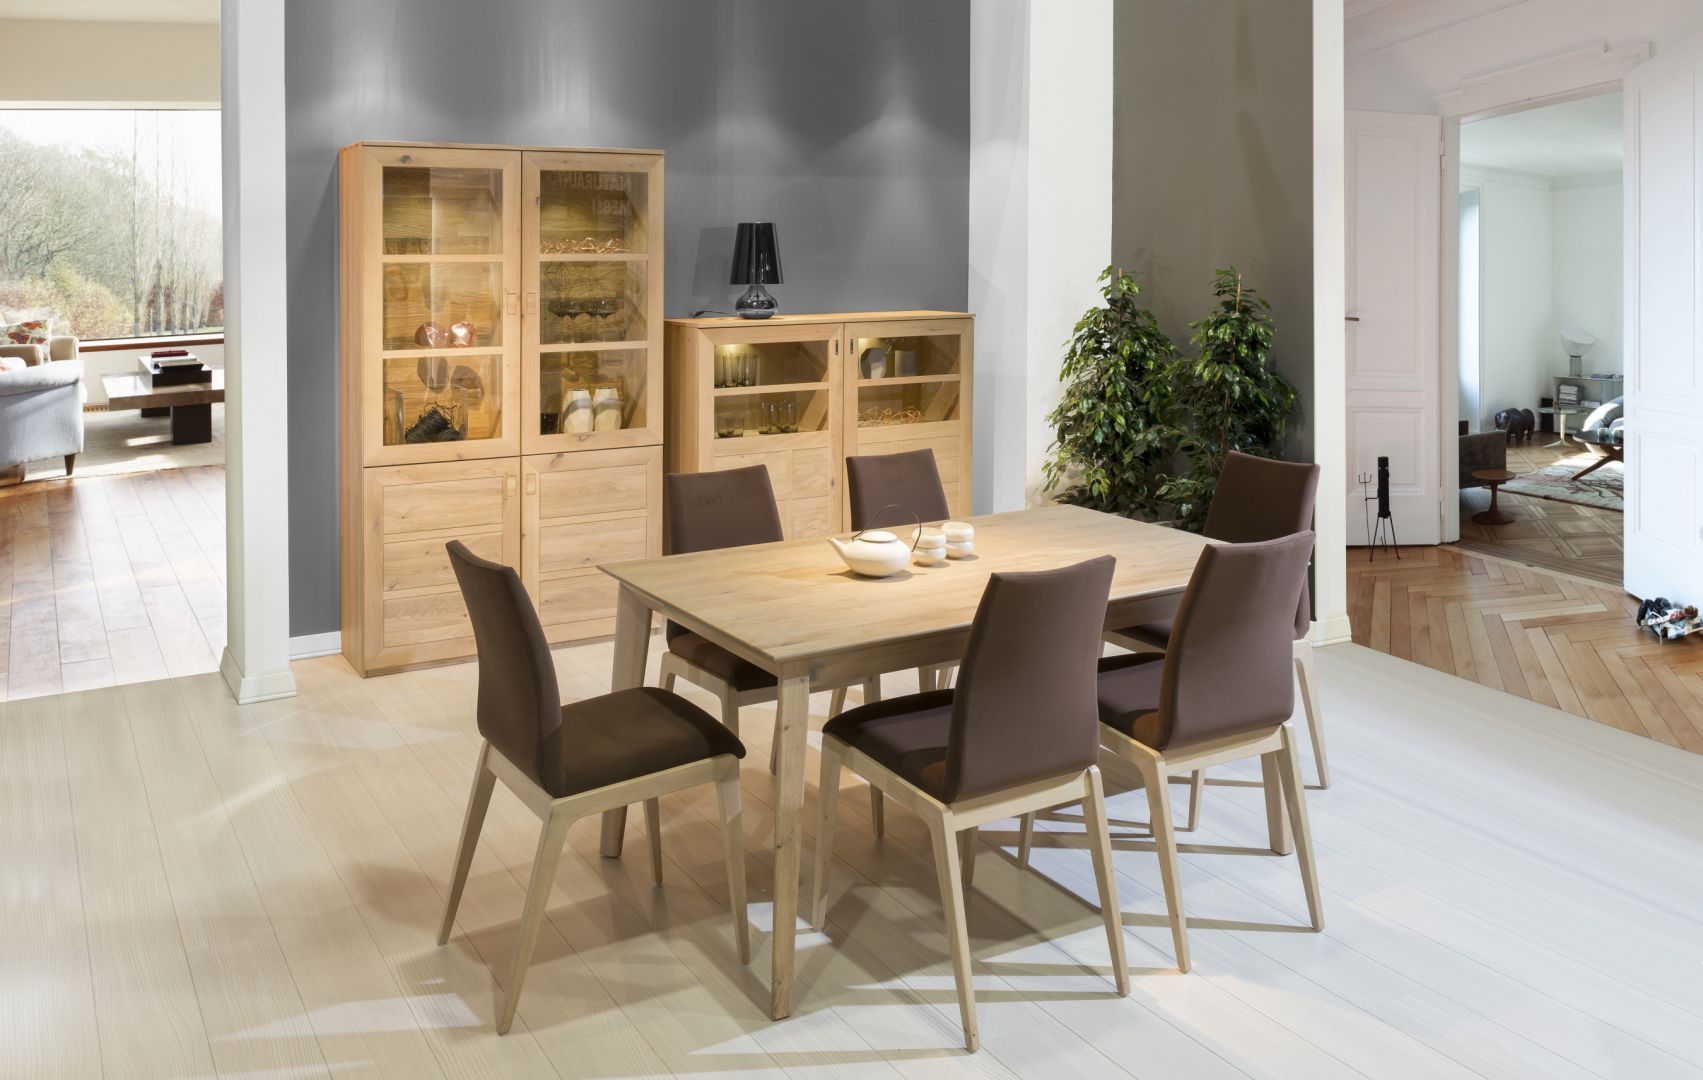 Kolekcja K 28 cieszy piękną barwą Dąb Bianco, która w połączeniu z detalami tj. skórzane krzesła, prezentuje się w salonie stylowo. Fot. Kolekcja Mebli Klose